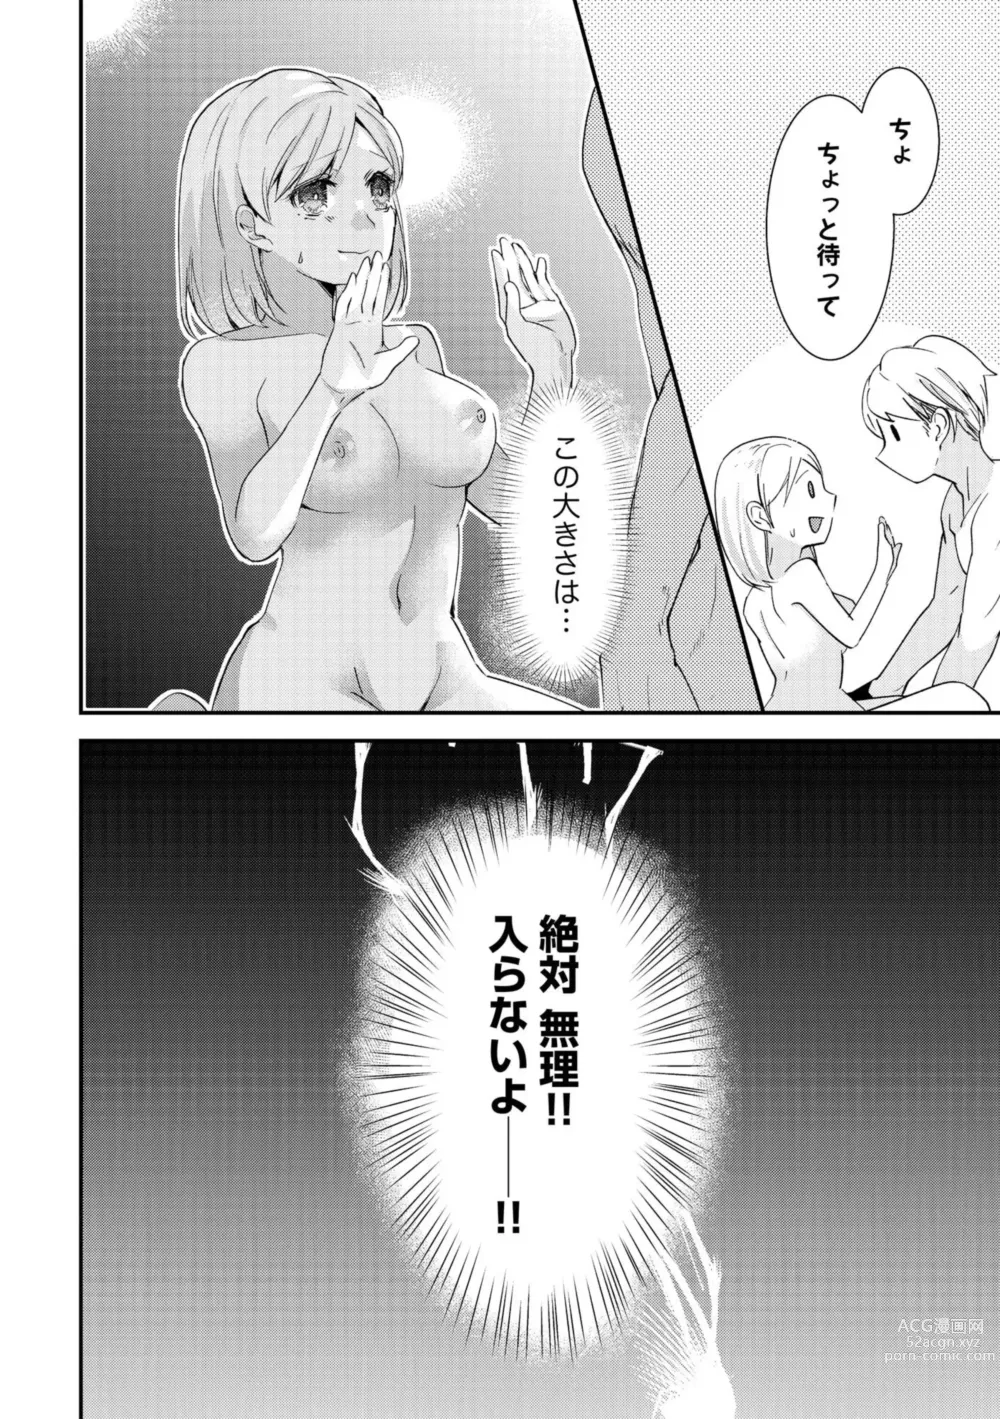 Page 26 of manga Karada Kakusa 40 cm no Amaicha Ressun XL-kyū no Okkina Are de Okumade Guriguri 1